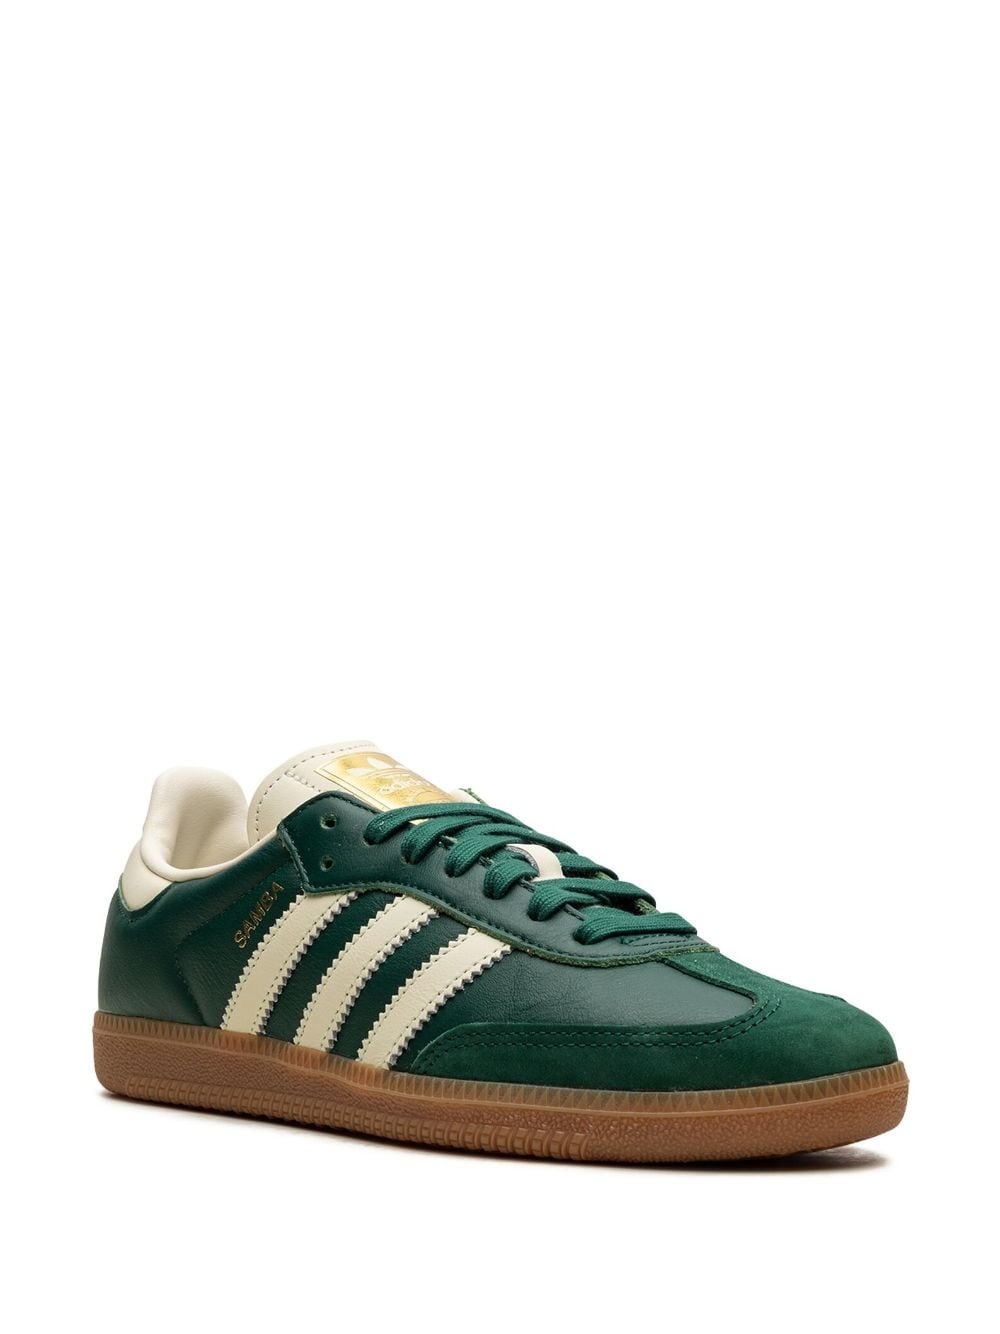 Samba OG "Collegiate Green" sneakers - 2